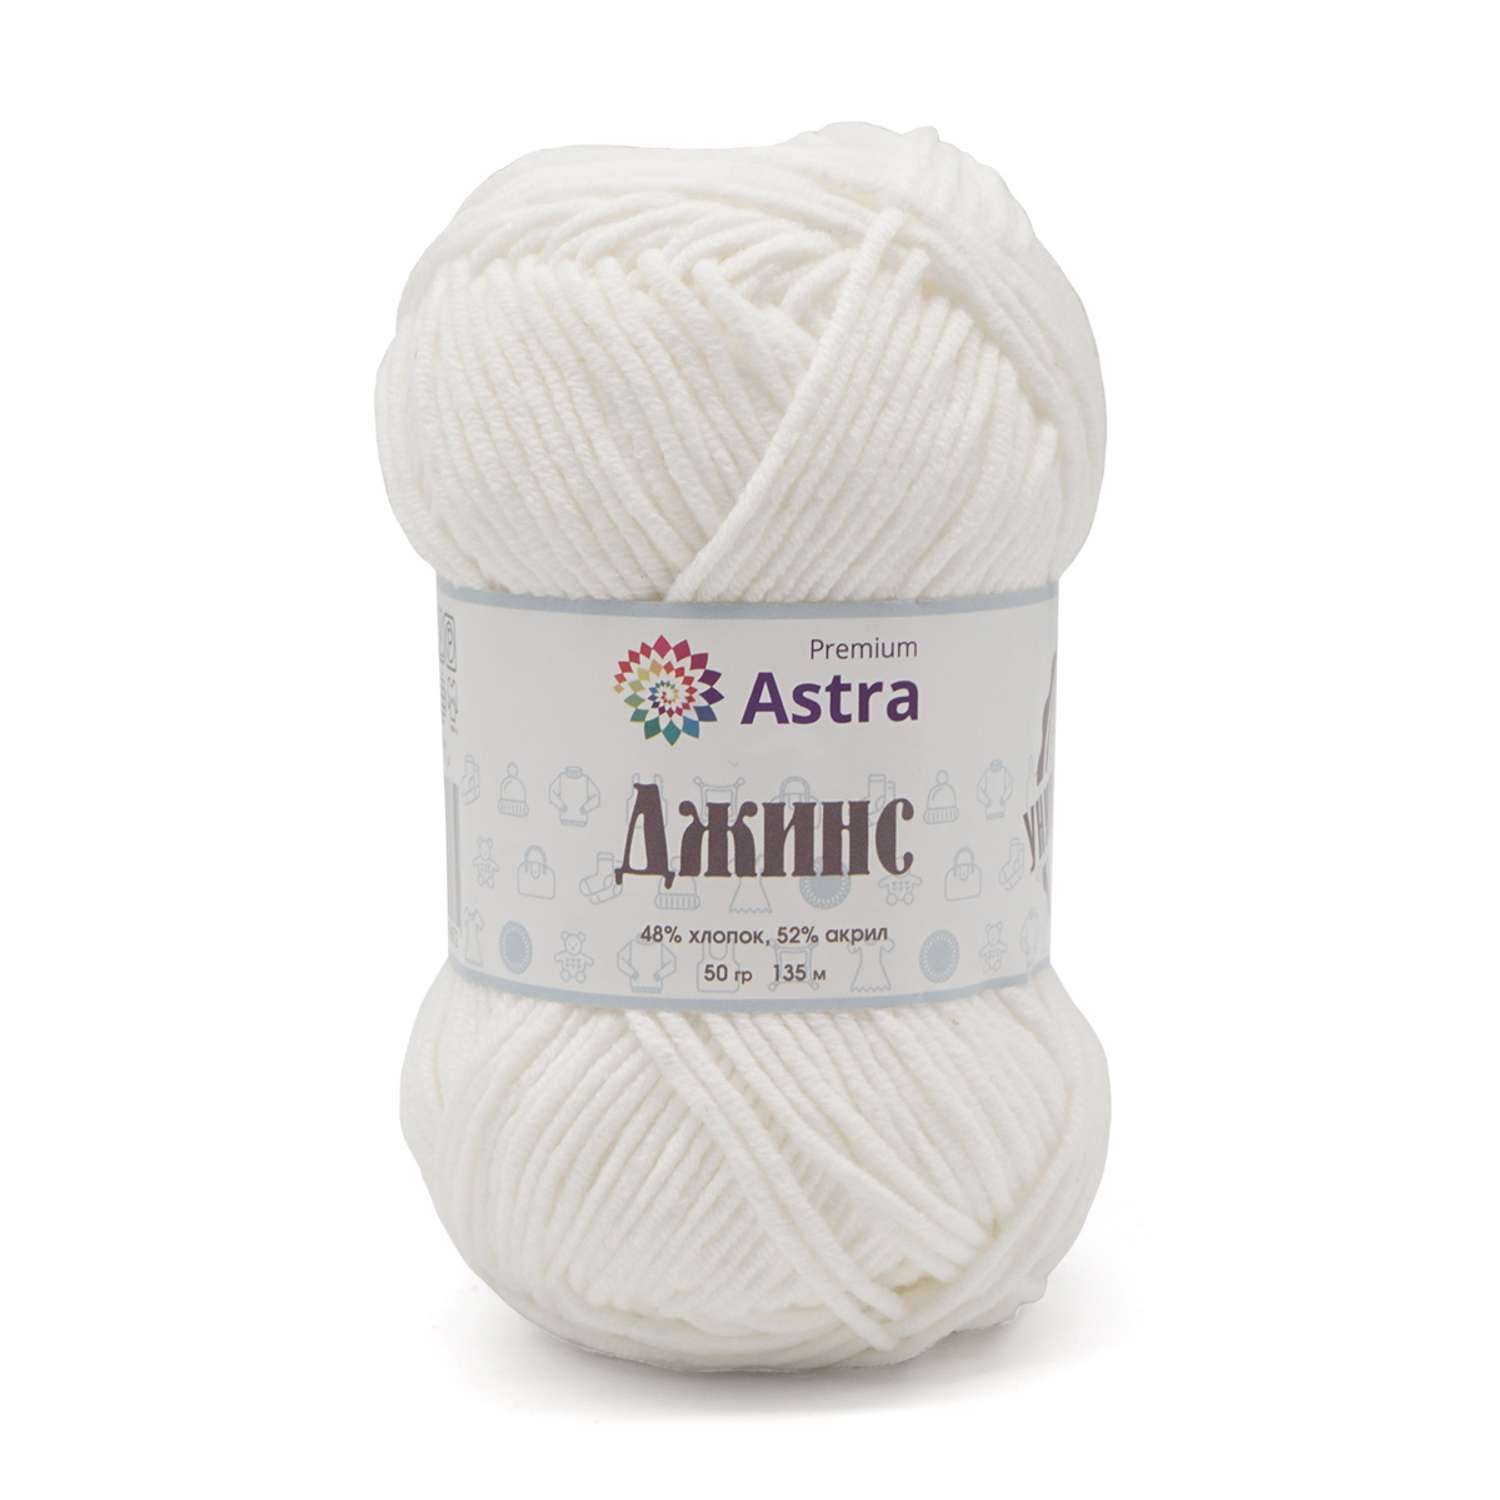 Пряжа для вязания Astra Premium джинс для повседневной одежды акрил хлопок 50 гр 135 м 001 белый 4 мотка - фото 8